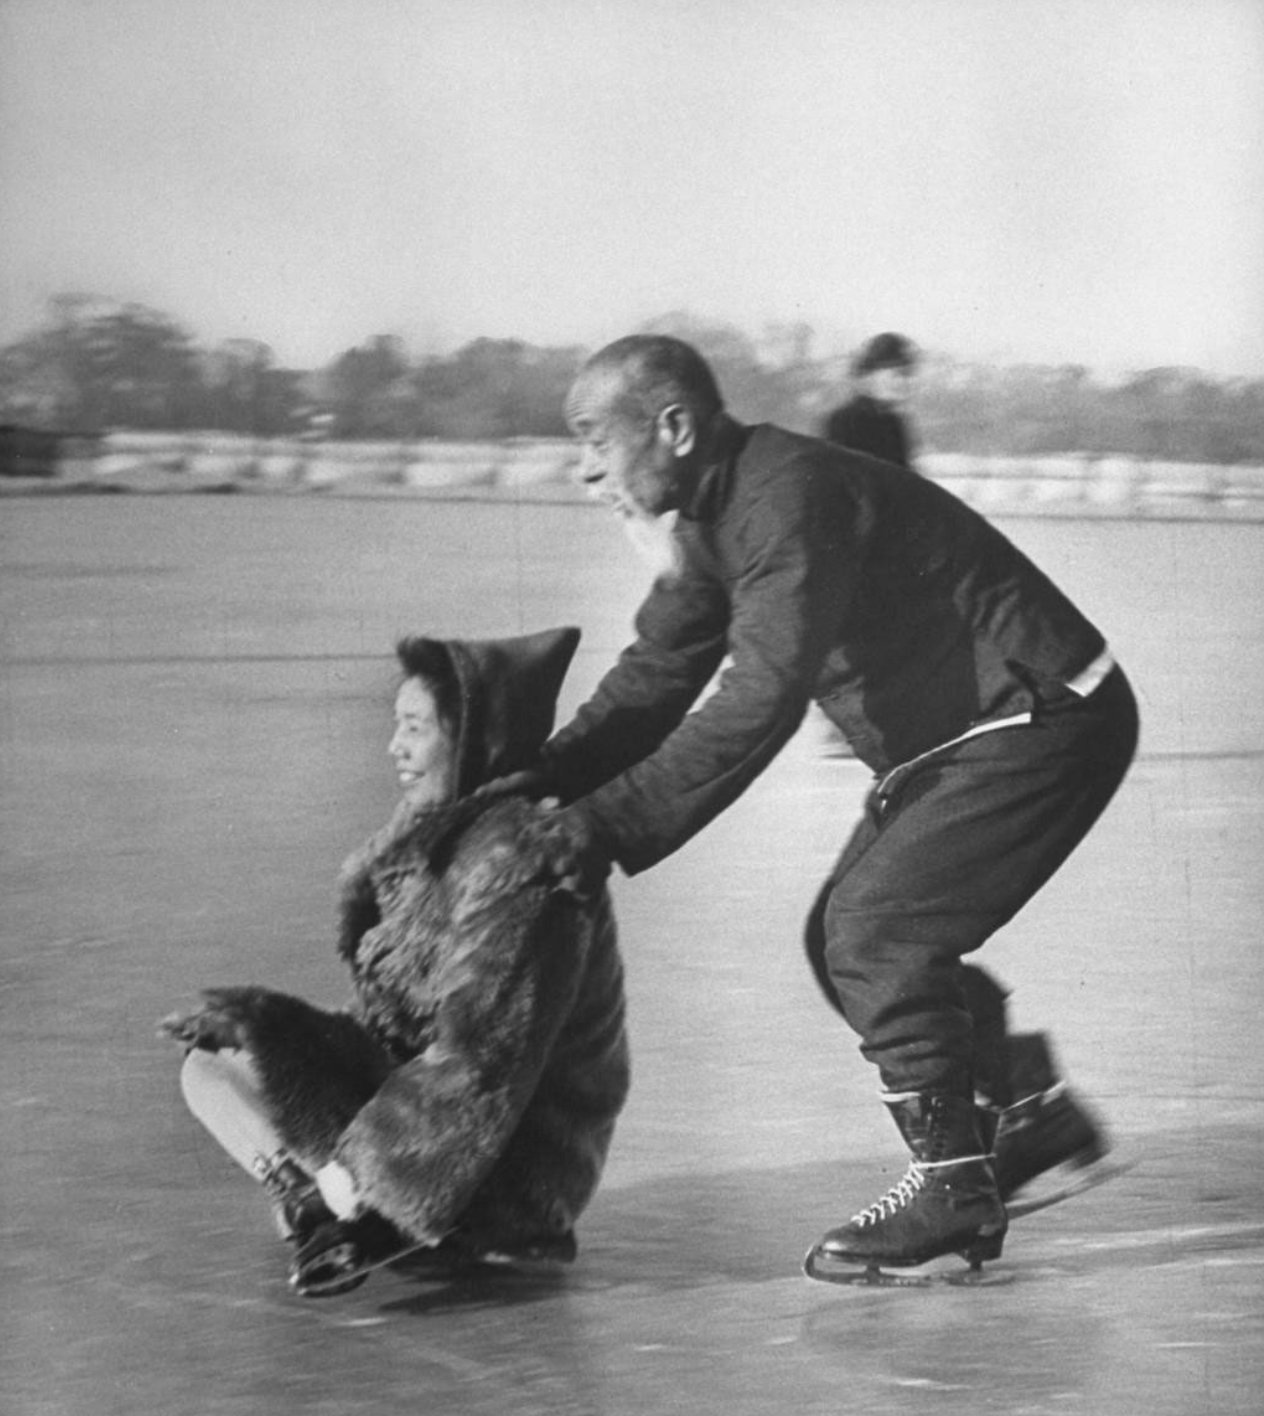 1946年北京老照片!70岁的老爷子什刹海溜冰,动